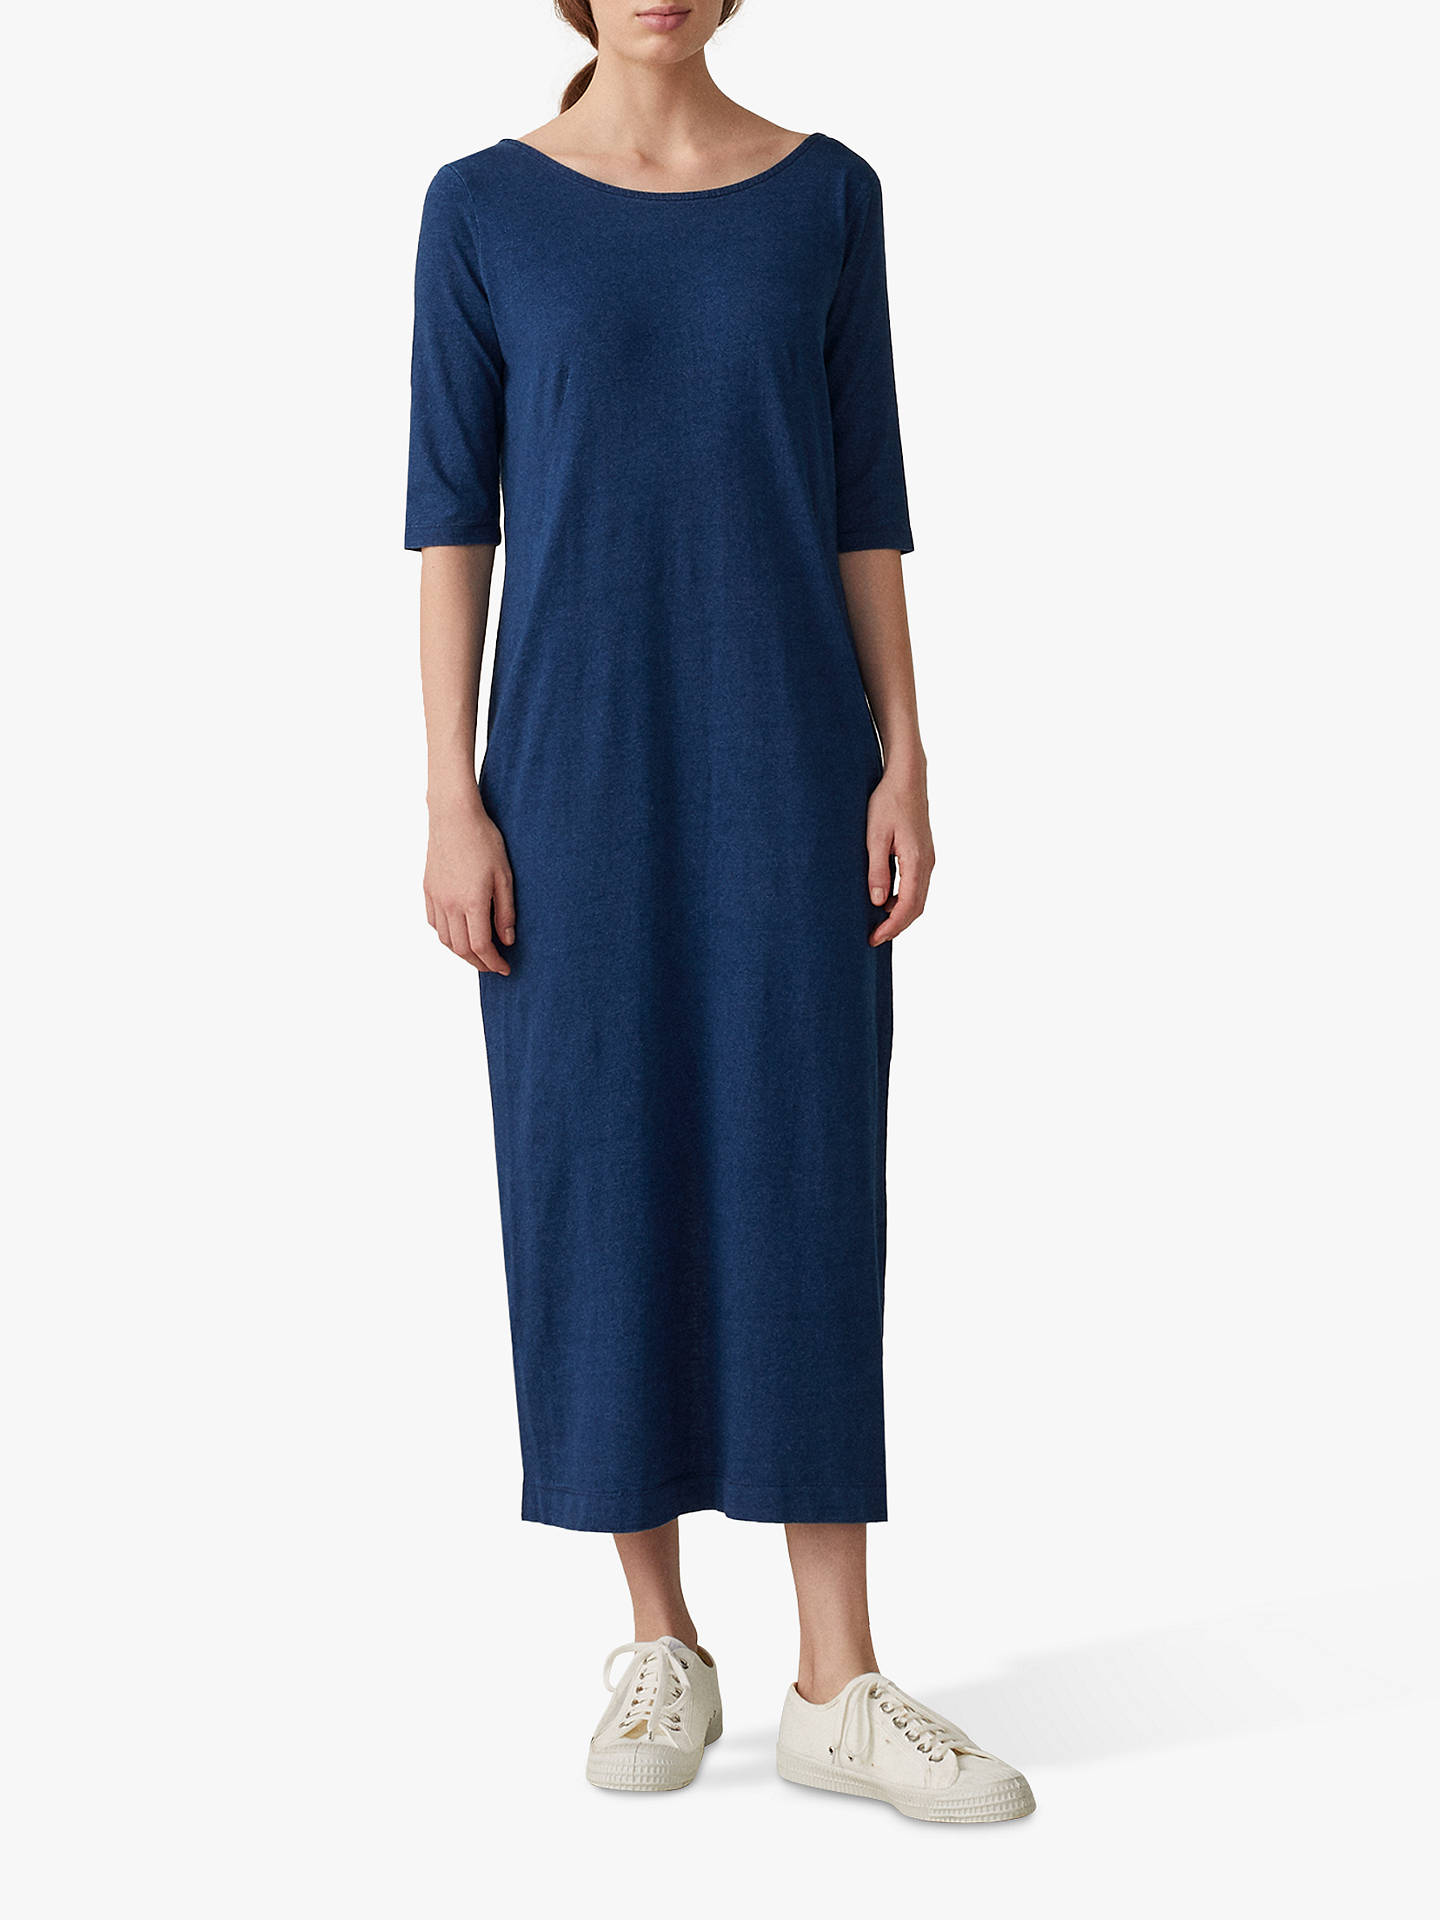 Toast Noelle Jersey Dress, Washed Indigo Blue at John Lewis & Partners